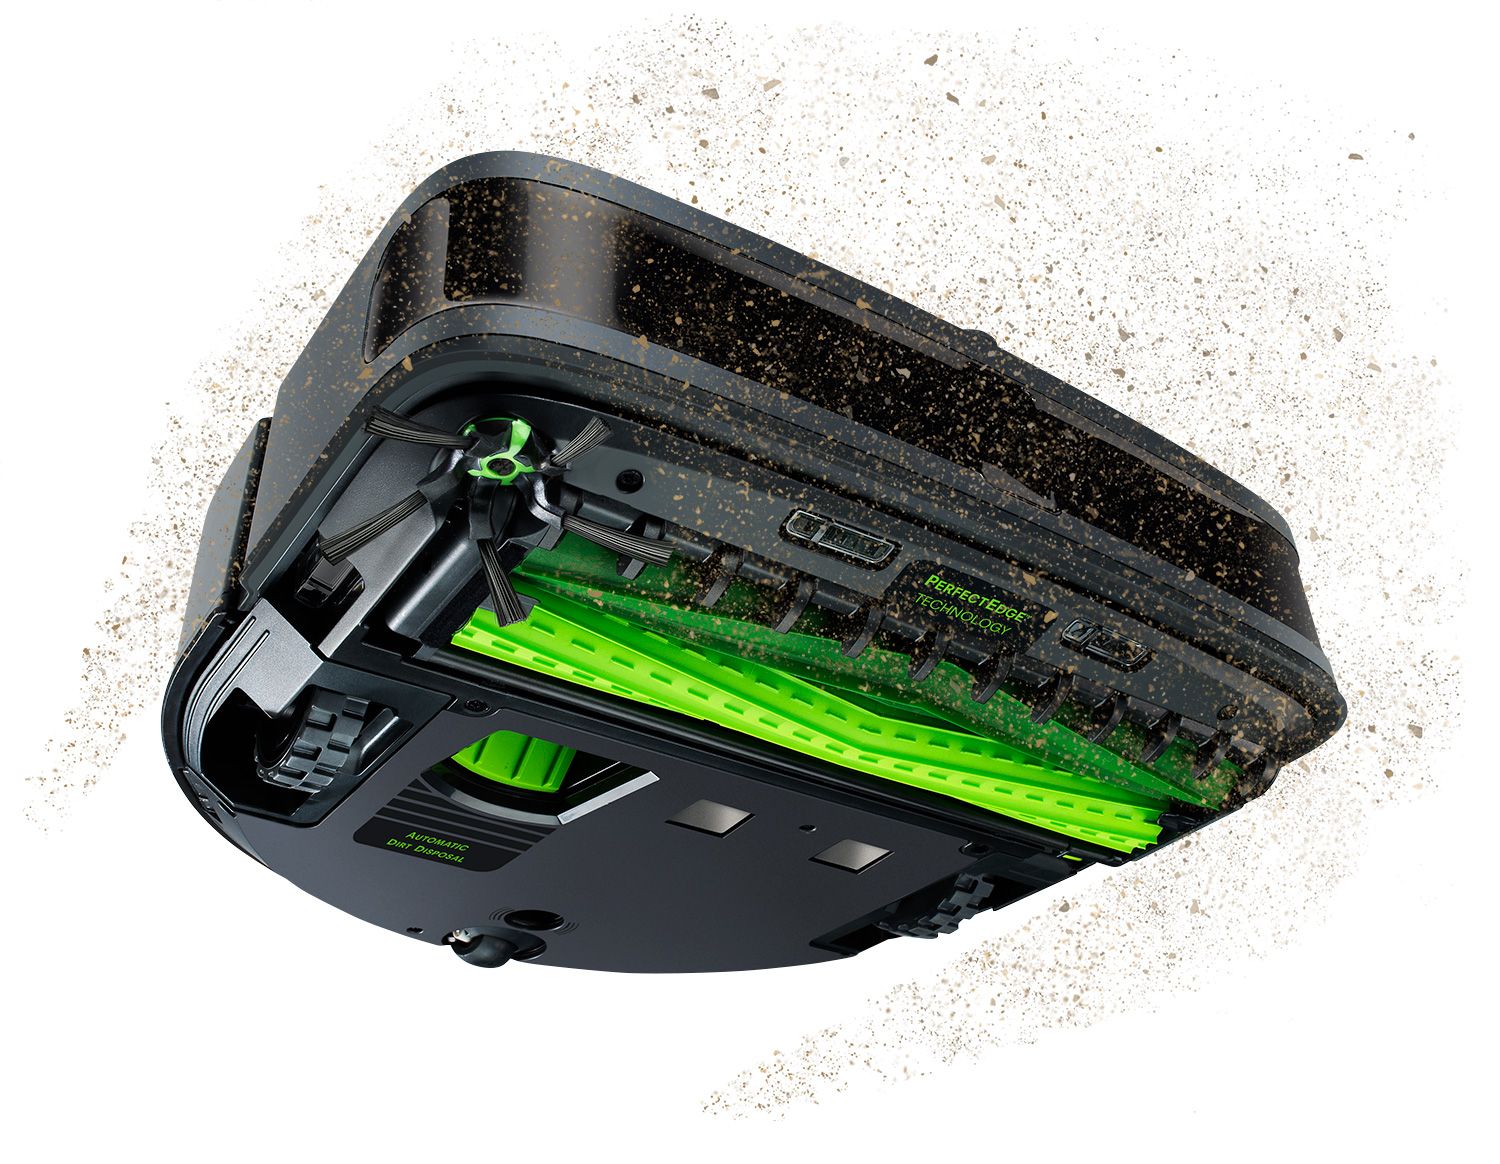 Roomba s9+,  робот - пылесос для сухой уборки